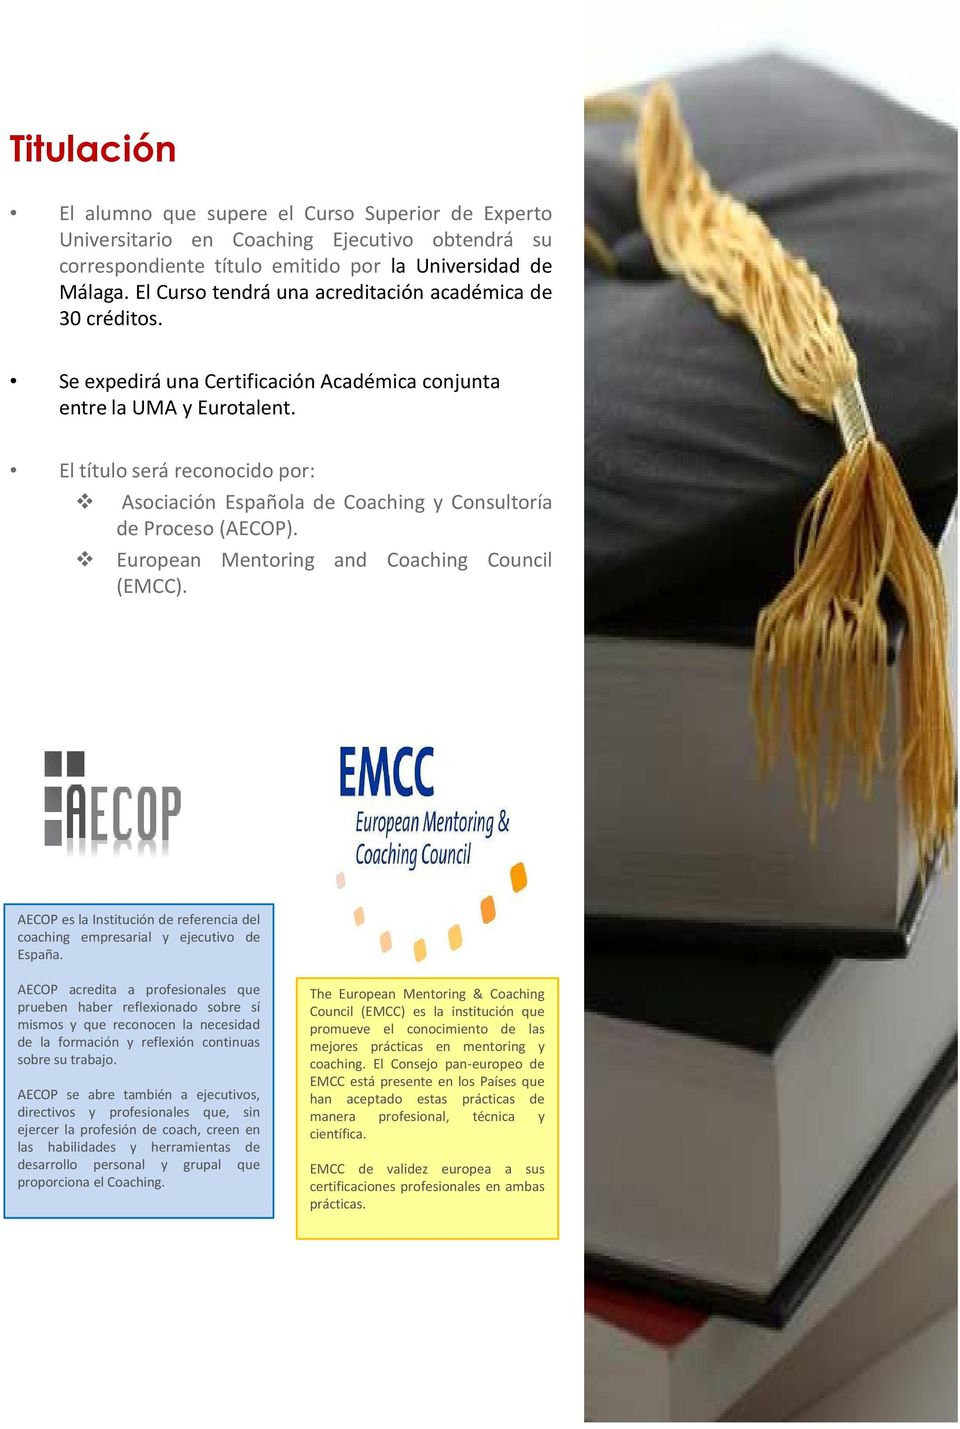 El título será reconocido por: Asociación Española de Coaching y Consultoría de Proceso(AECOP). European Mentoring and Coaching Council (EMCC).